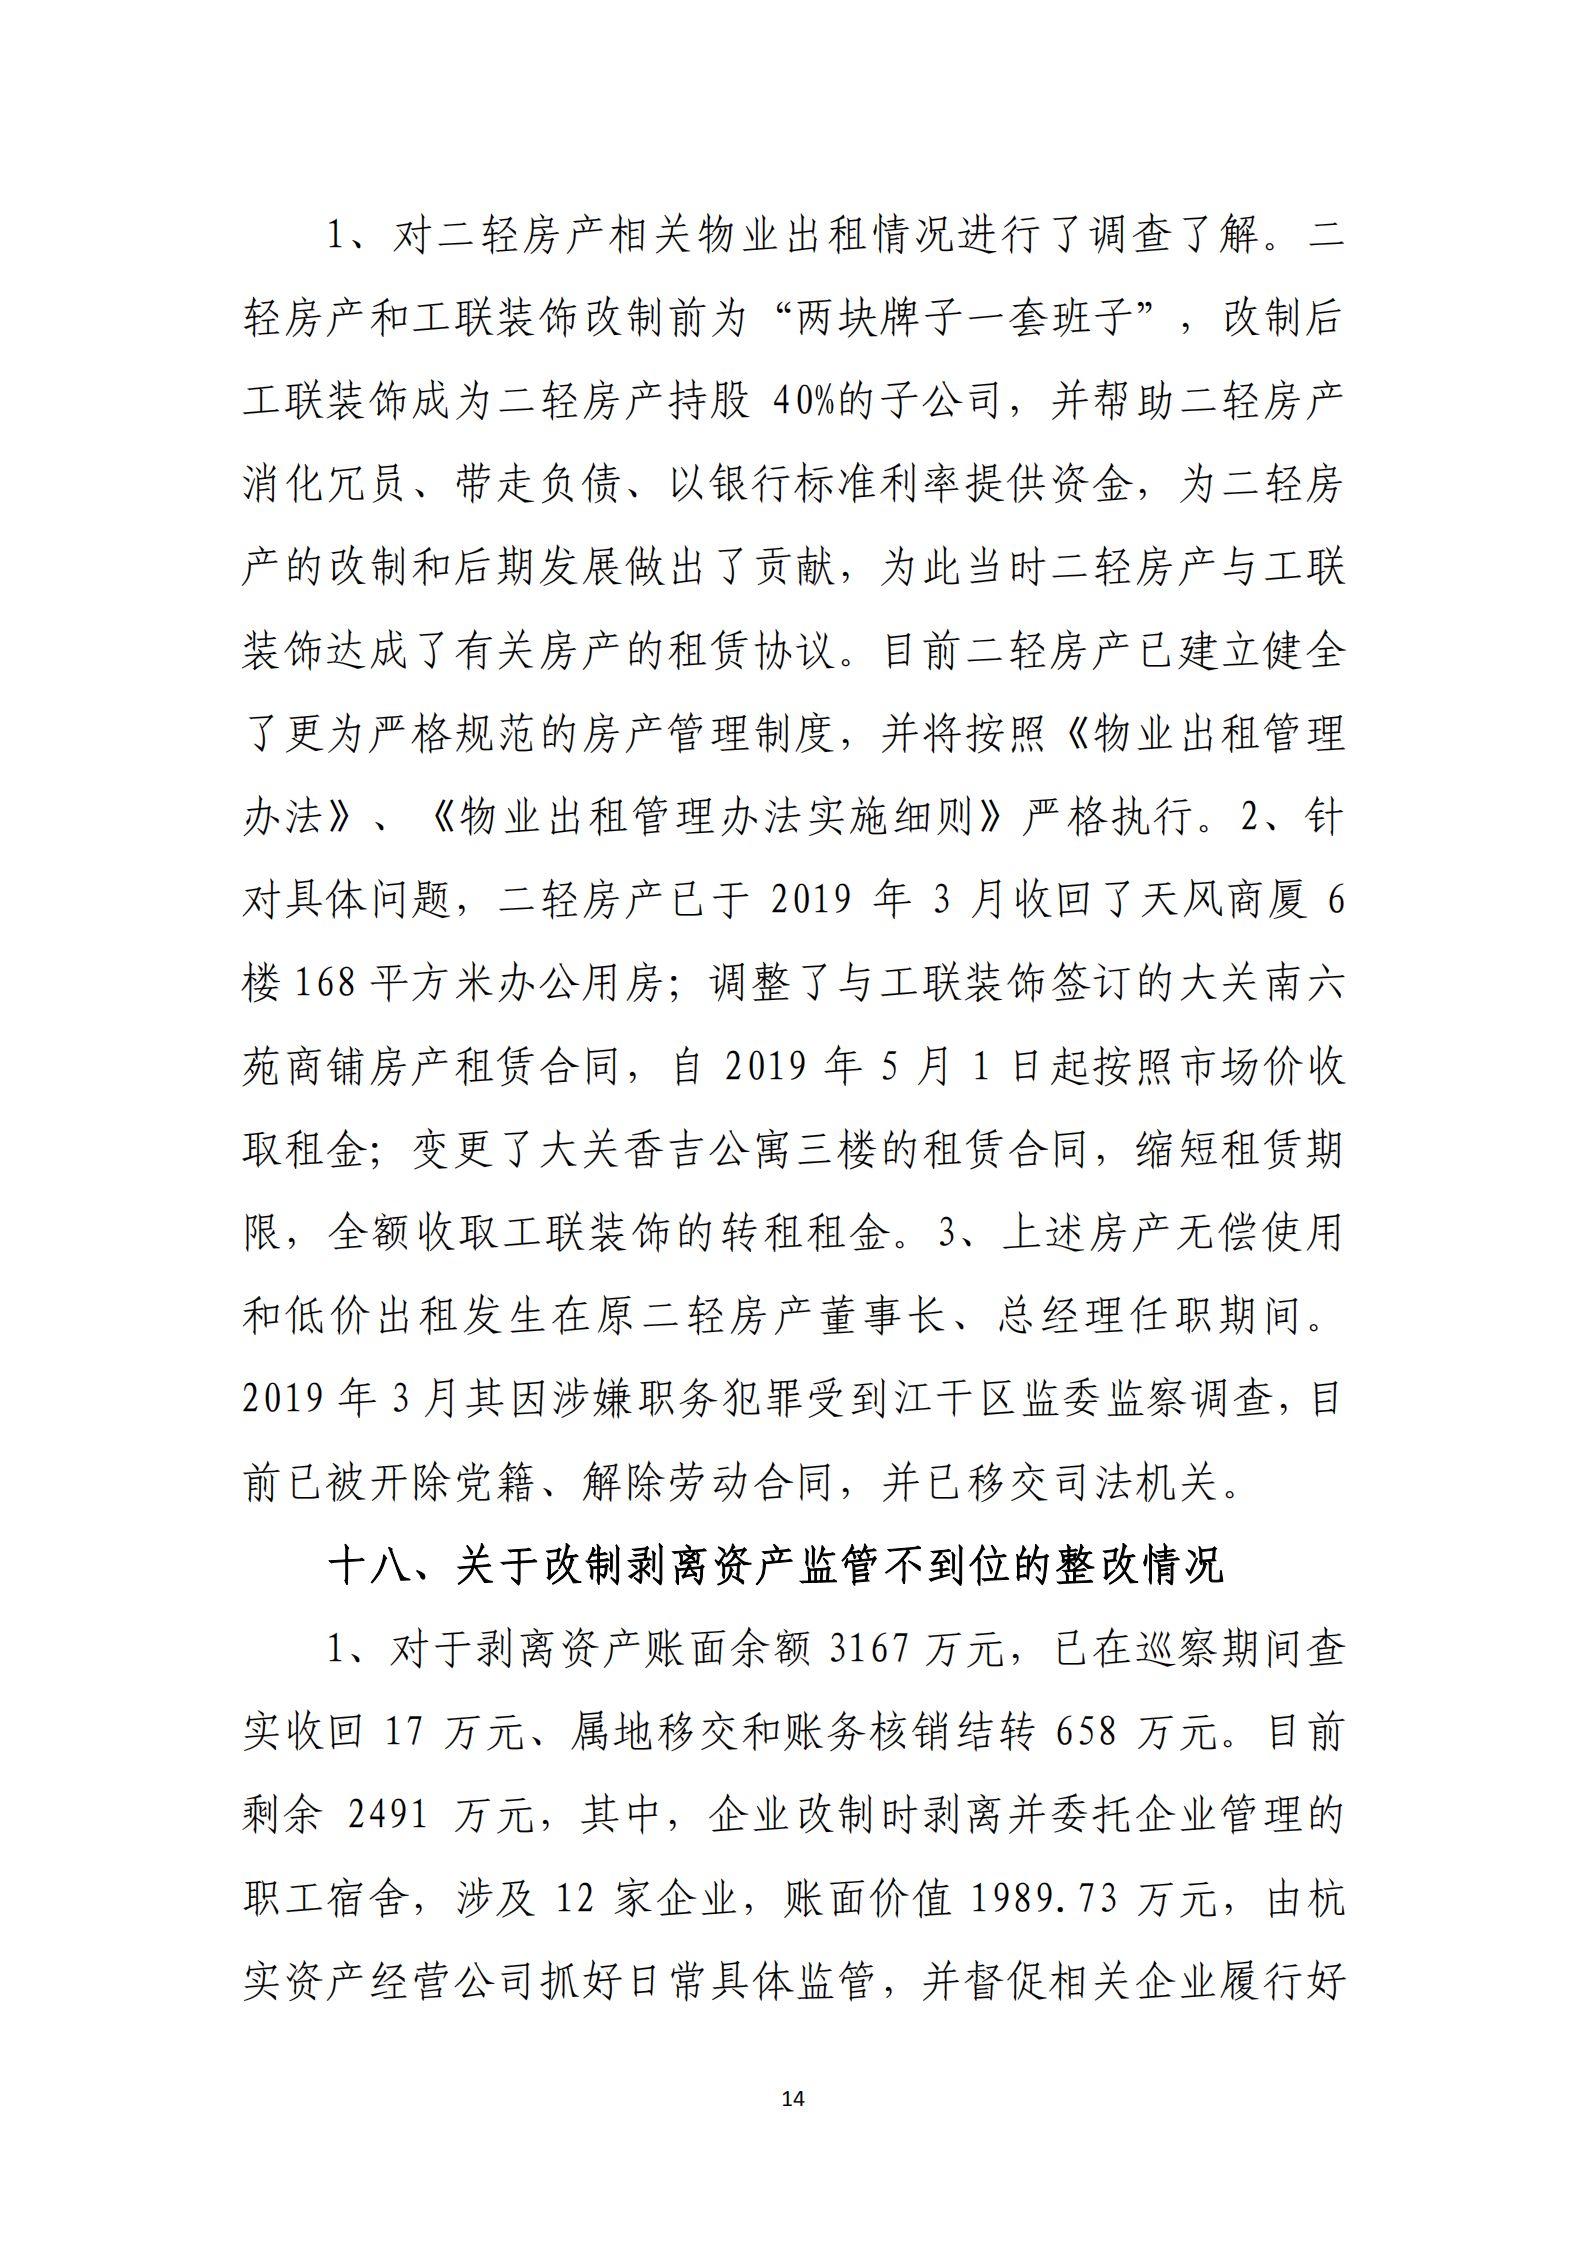 杭实集团党委关于巡察整改情况的通报_13.png